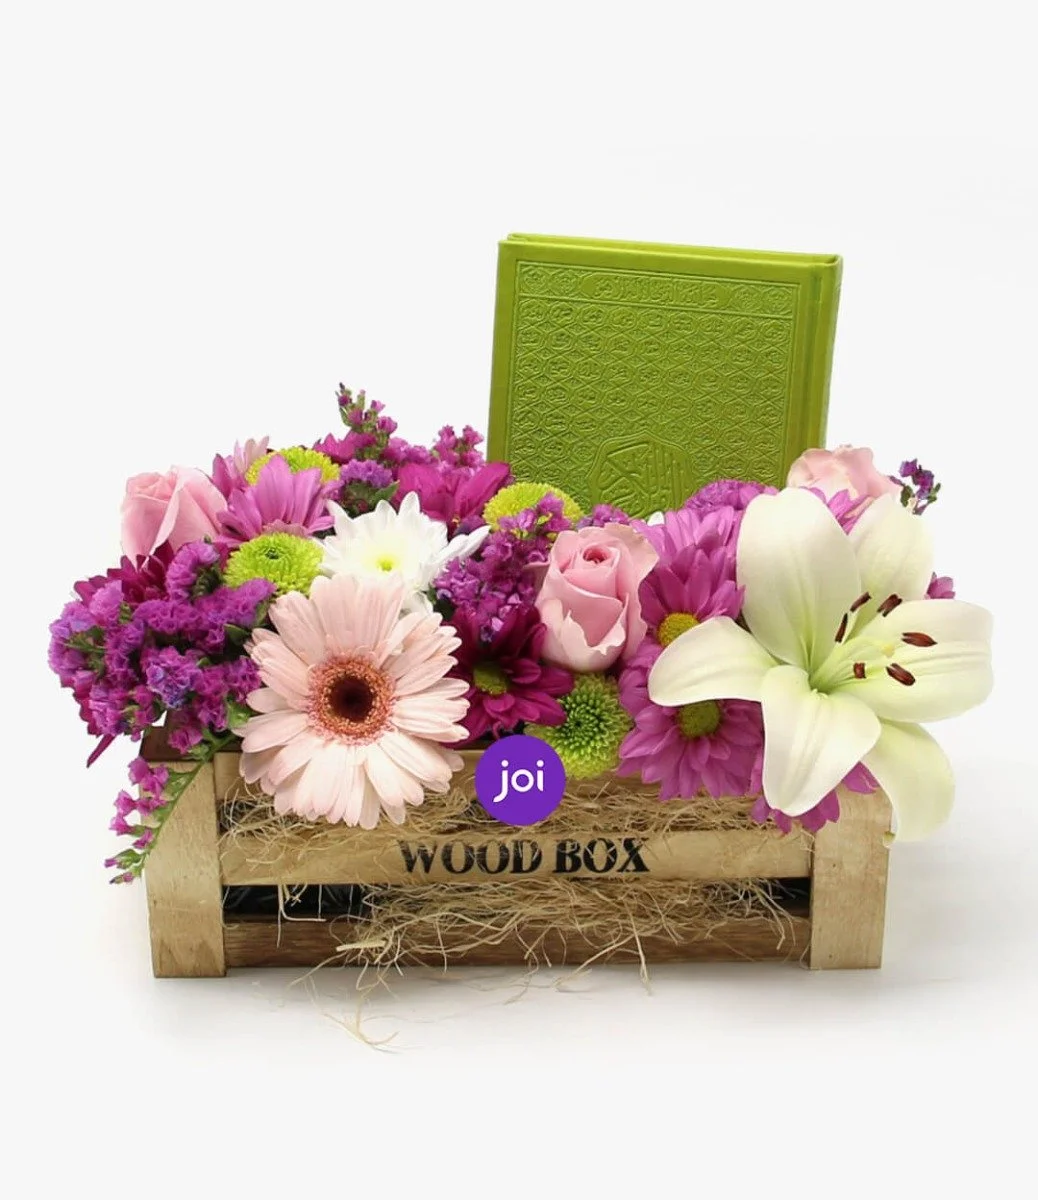 صندوق خشبي به زهور ومصحف القرآن الكريم (أخضر)